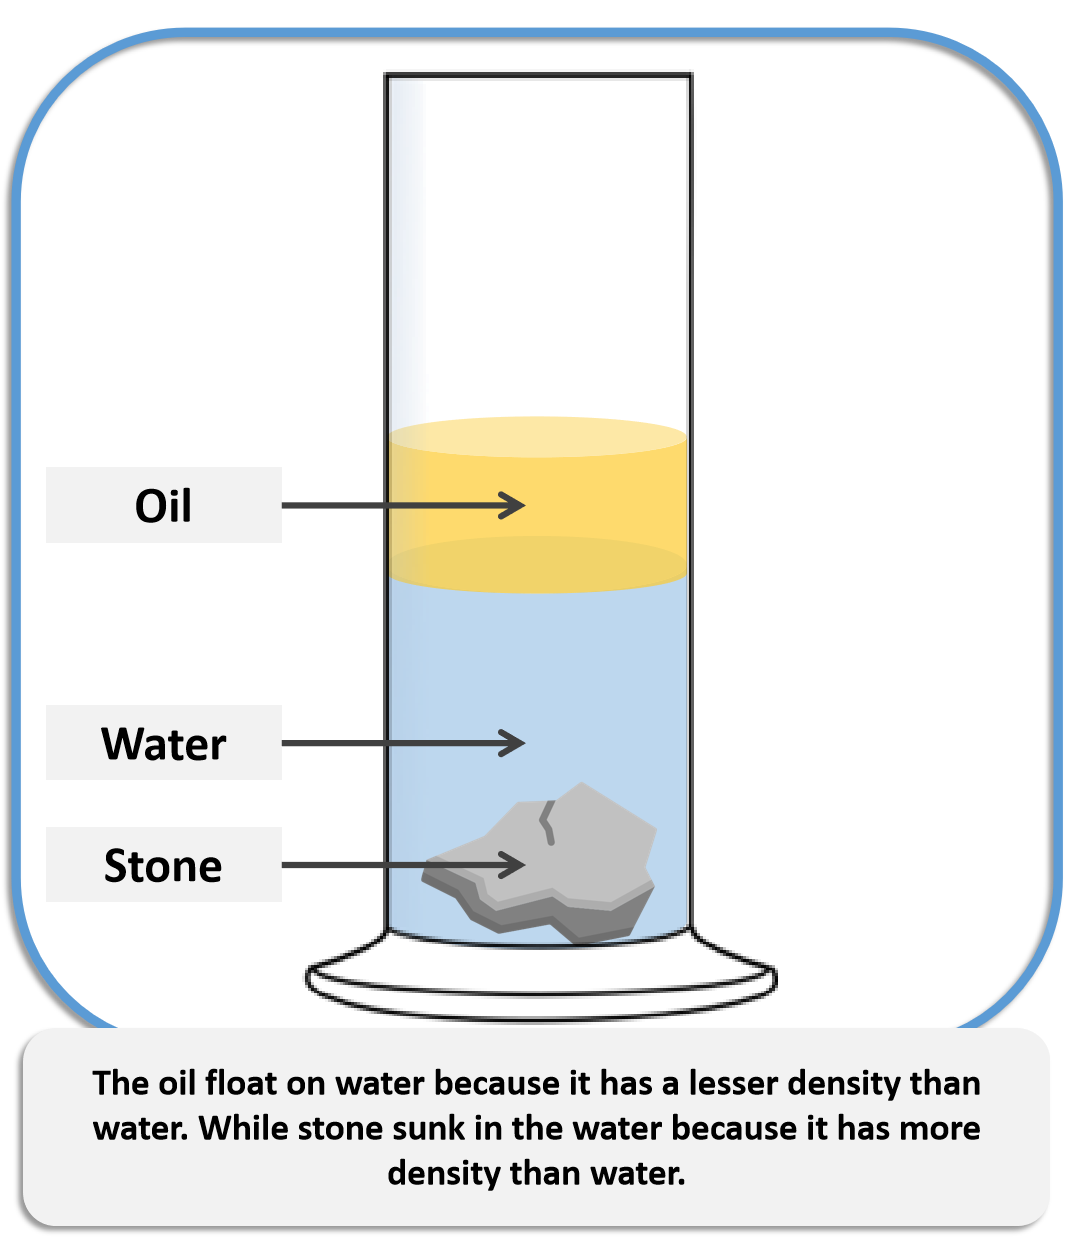 density of water lbgal